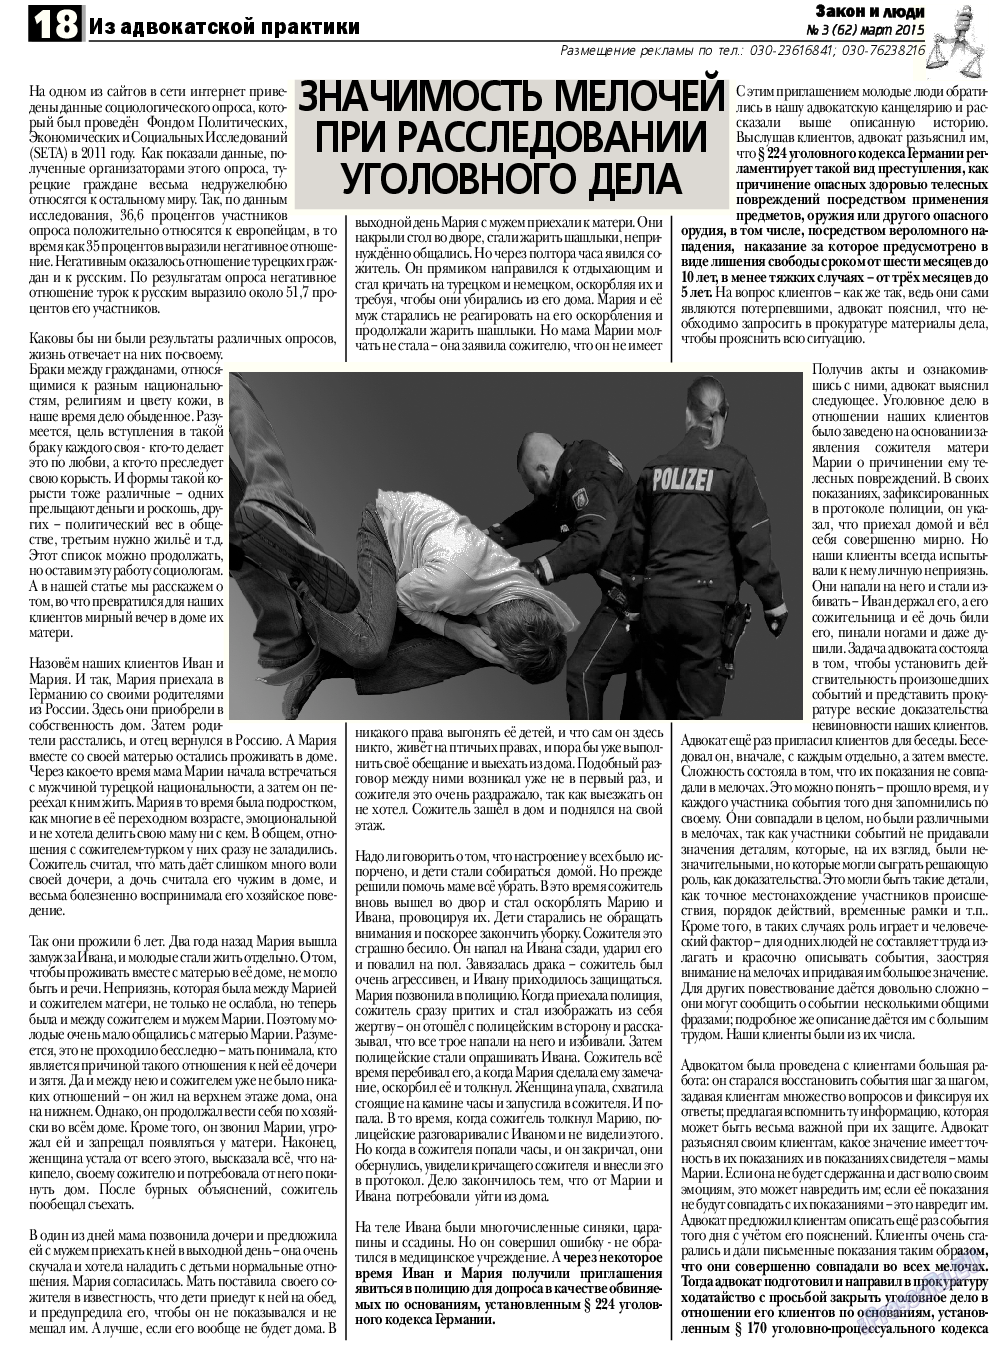 Закон и люди, газета. 2015 №3 стр.18